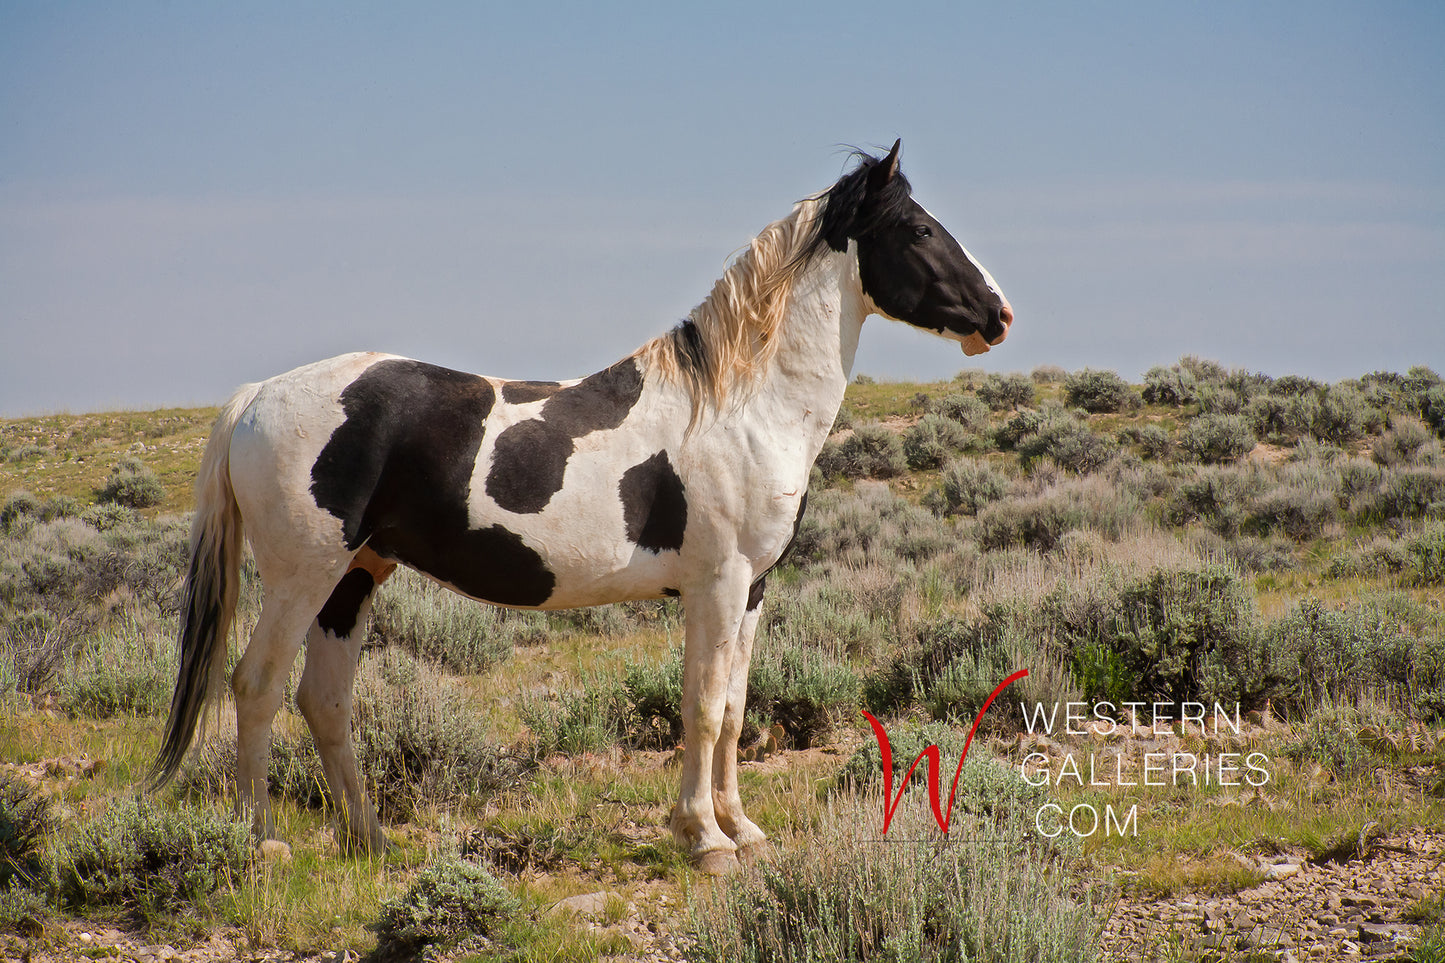 Wild Horses | Tecumseh Standing Proud